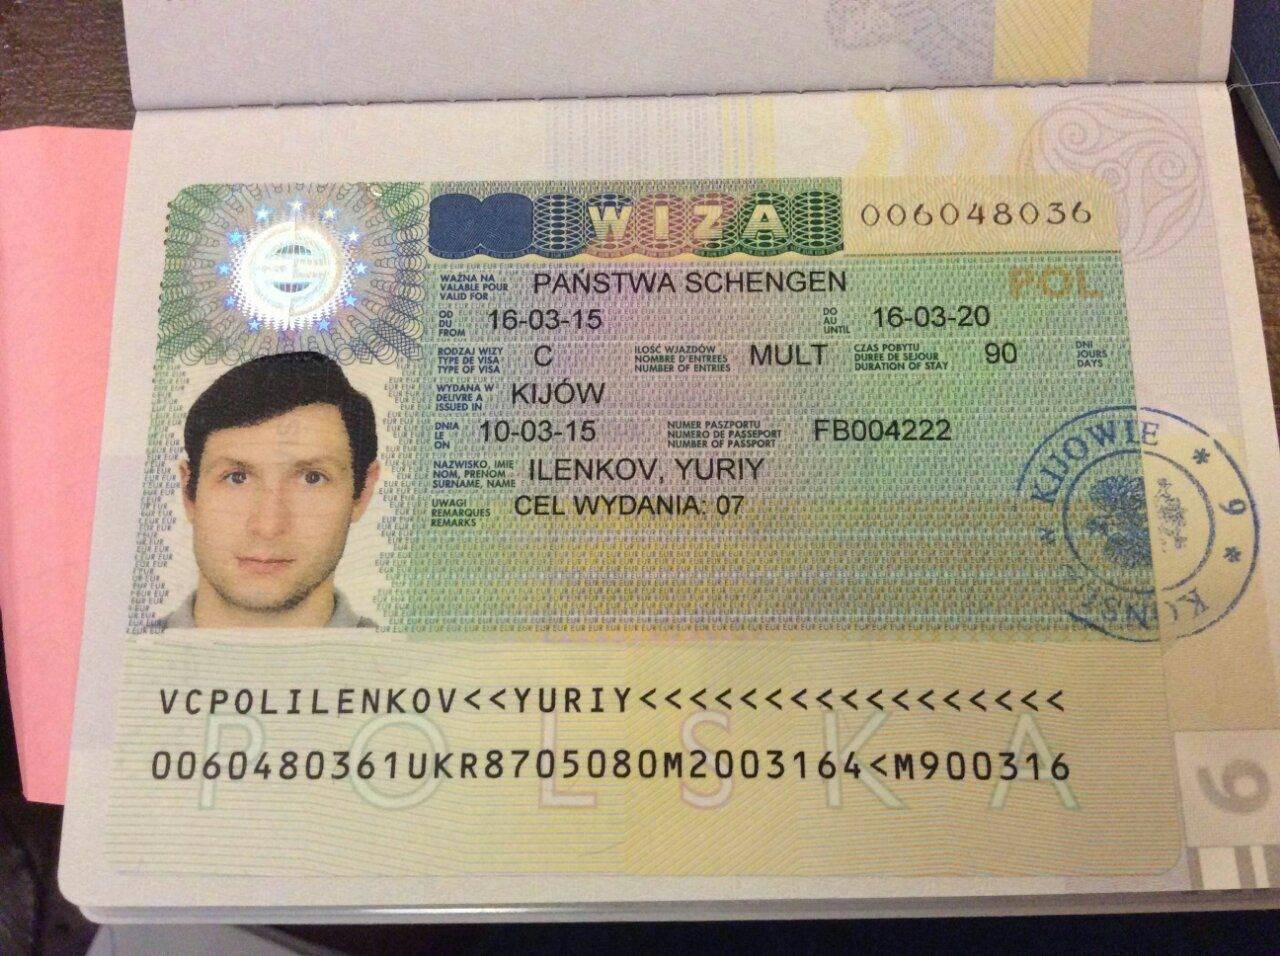 Виза в польшу самостоятельно в москве, необходимые документы